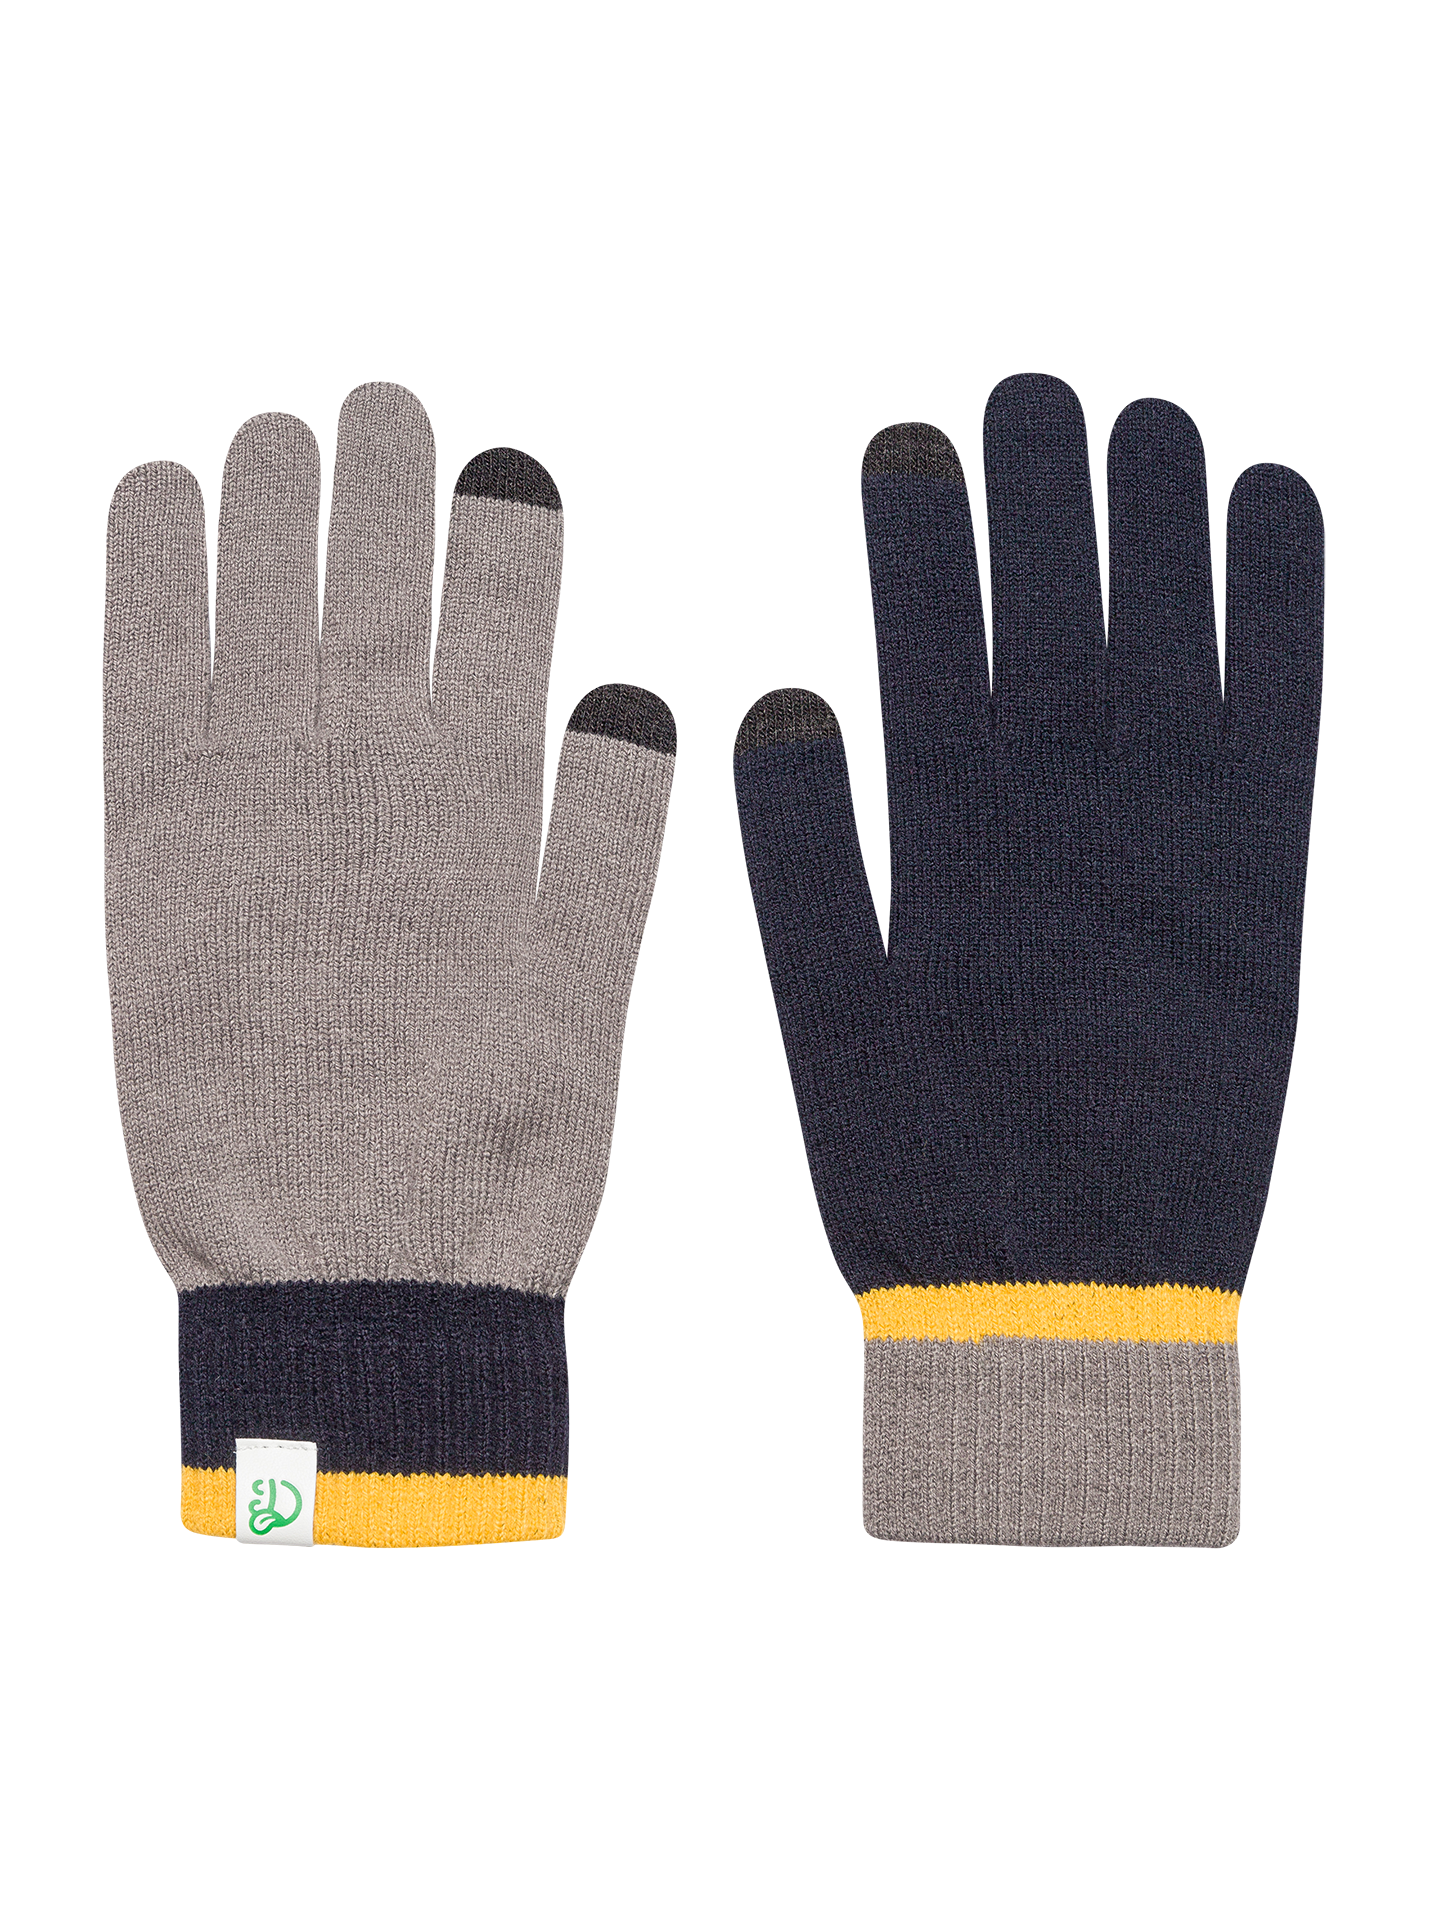 Dark Blue & Grey Knitted Gloves